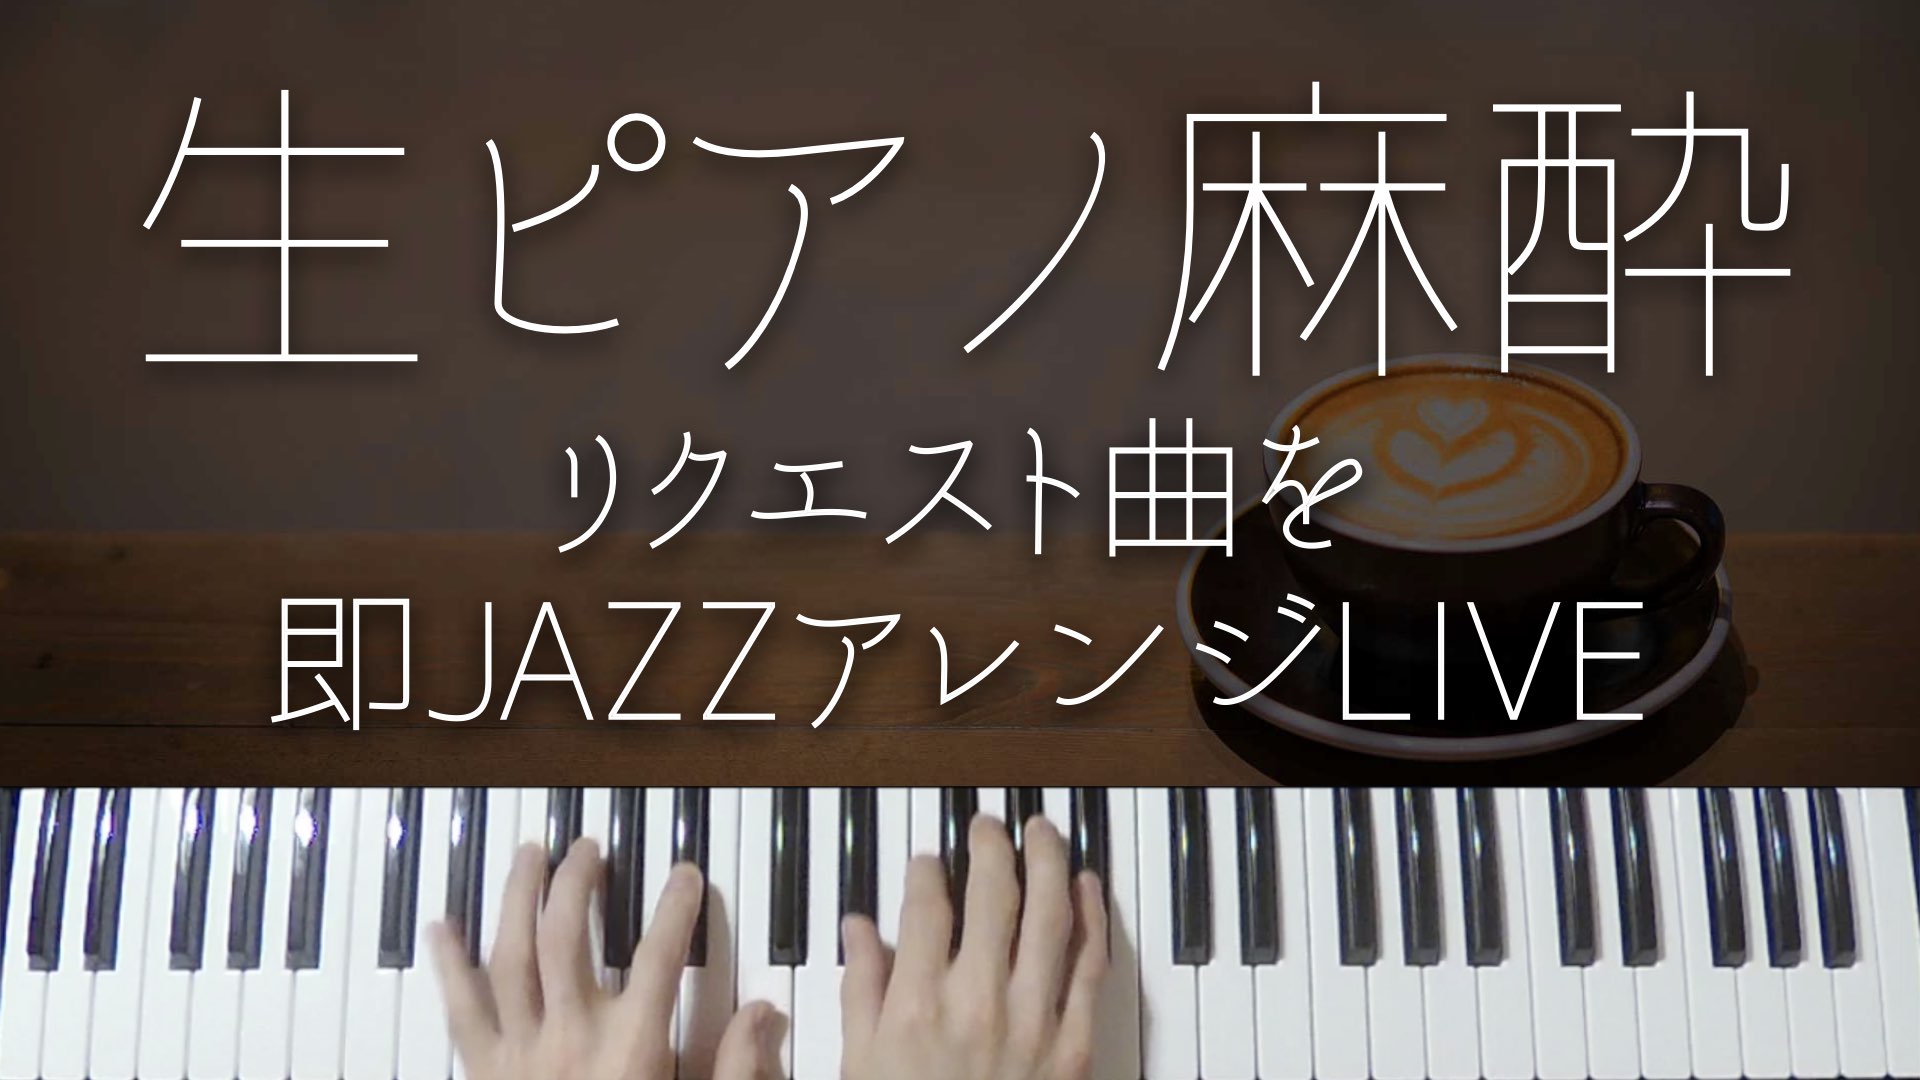 【ピアノ生LIVE配信】チャットで頂いたリクエストにお応えして弾いていきます。